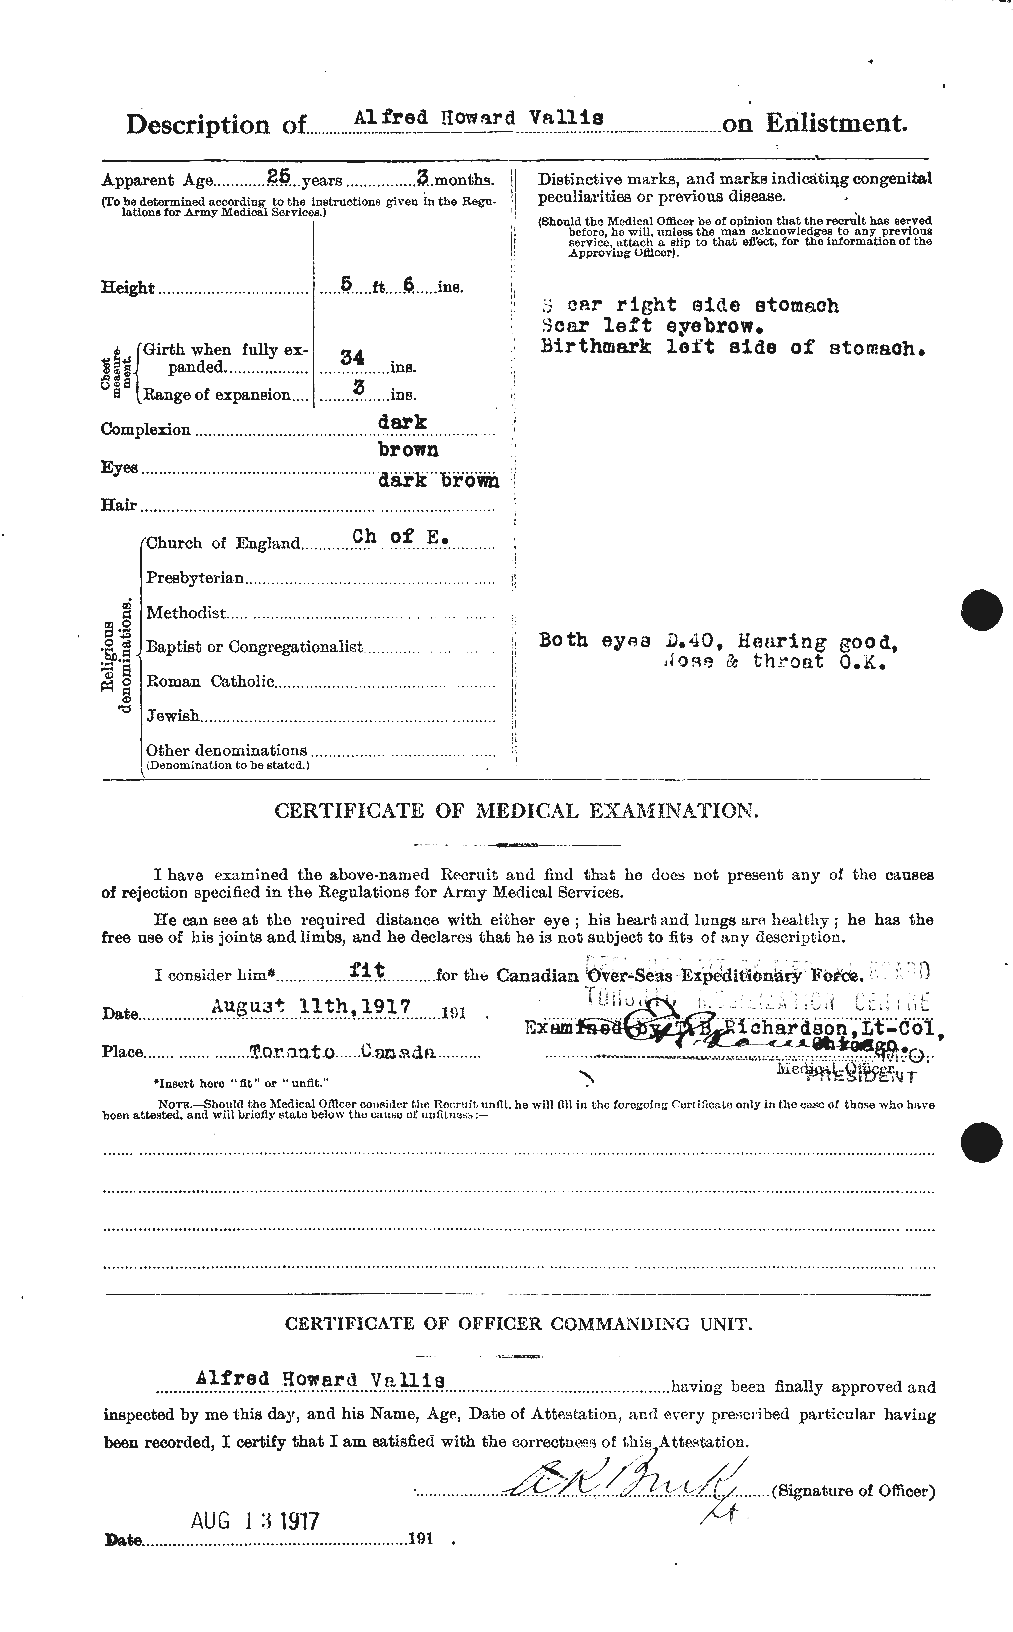 Dossiers du Personnel de la Première Guerre mondiale - CEC 646509b